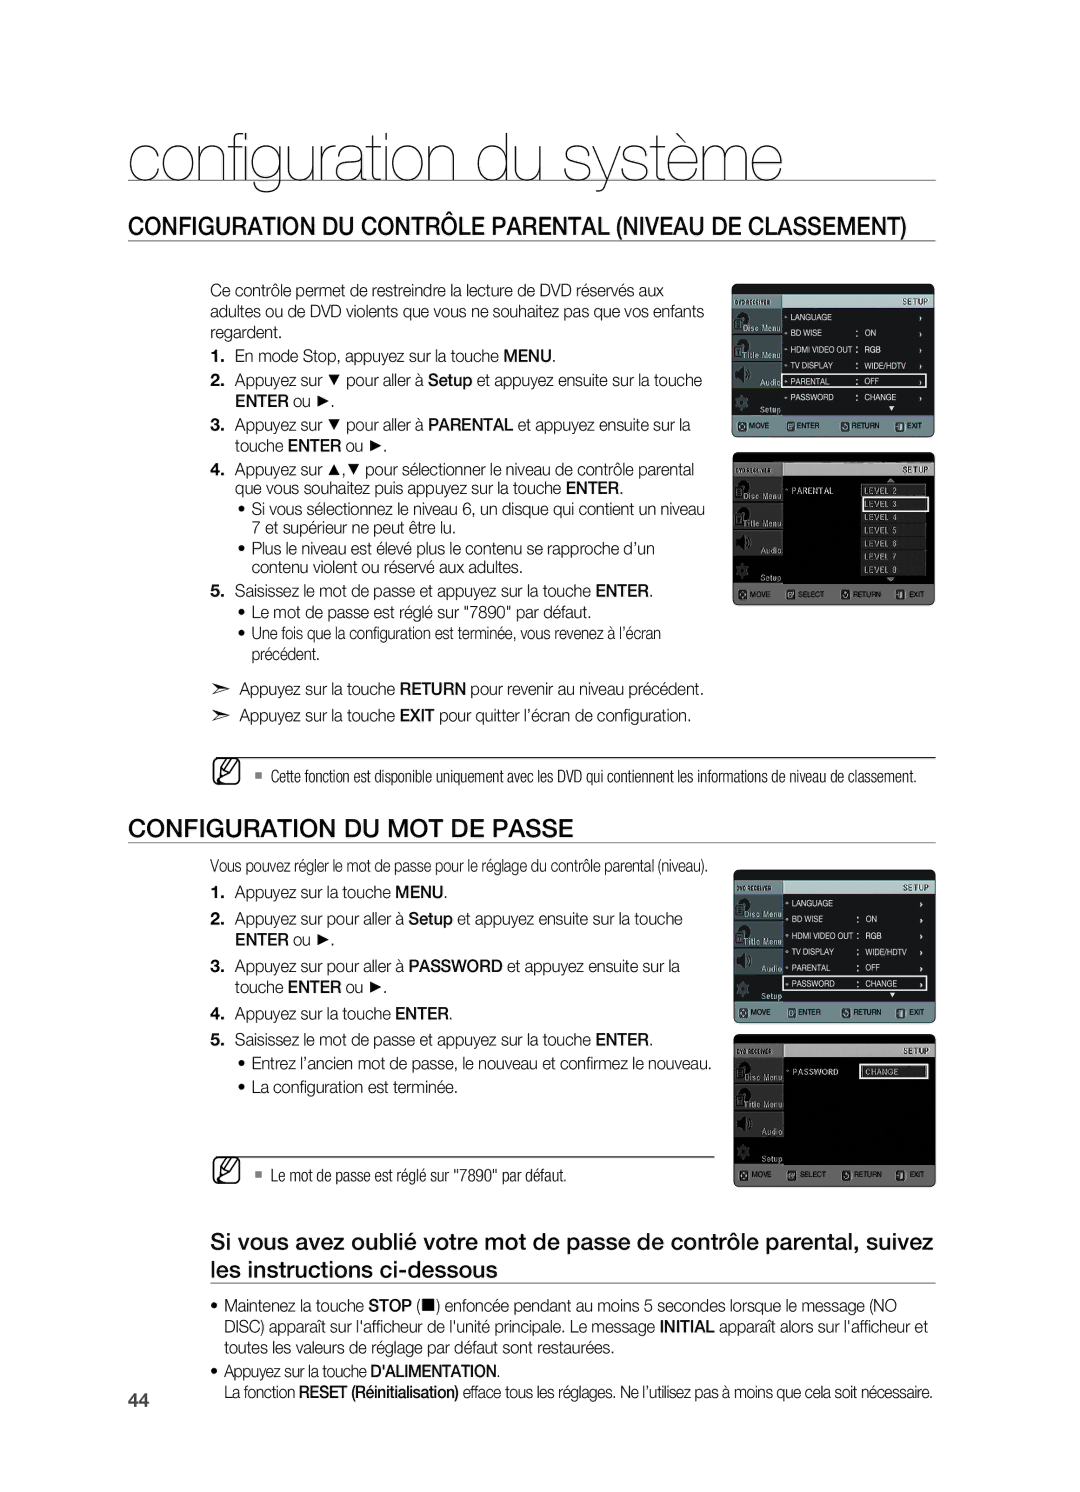 Samsung HT-X622T/XEF manual Configuration du contrôle parental Niveau de classement, Configuration du mot de passe 